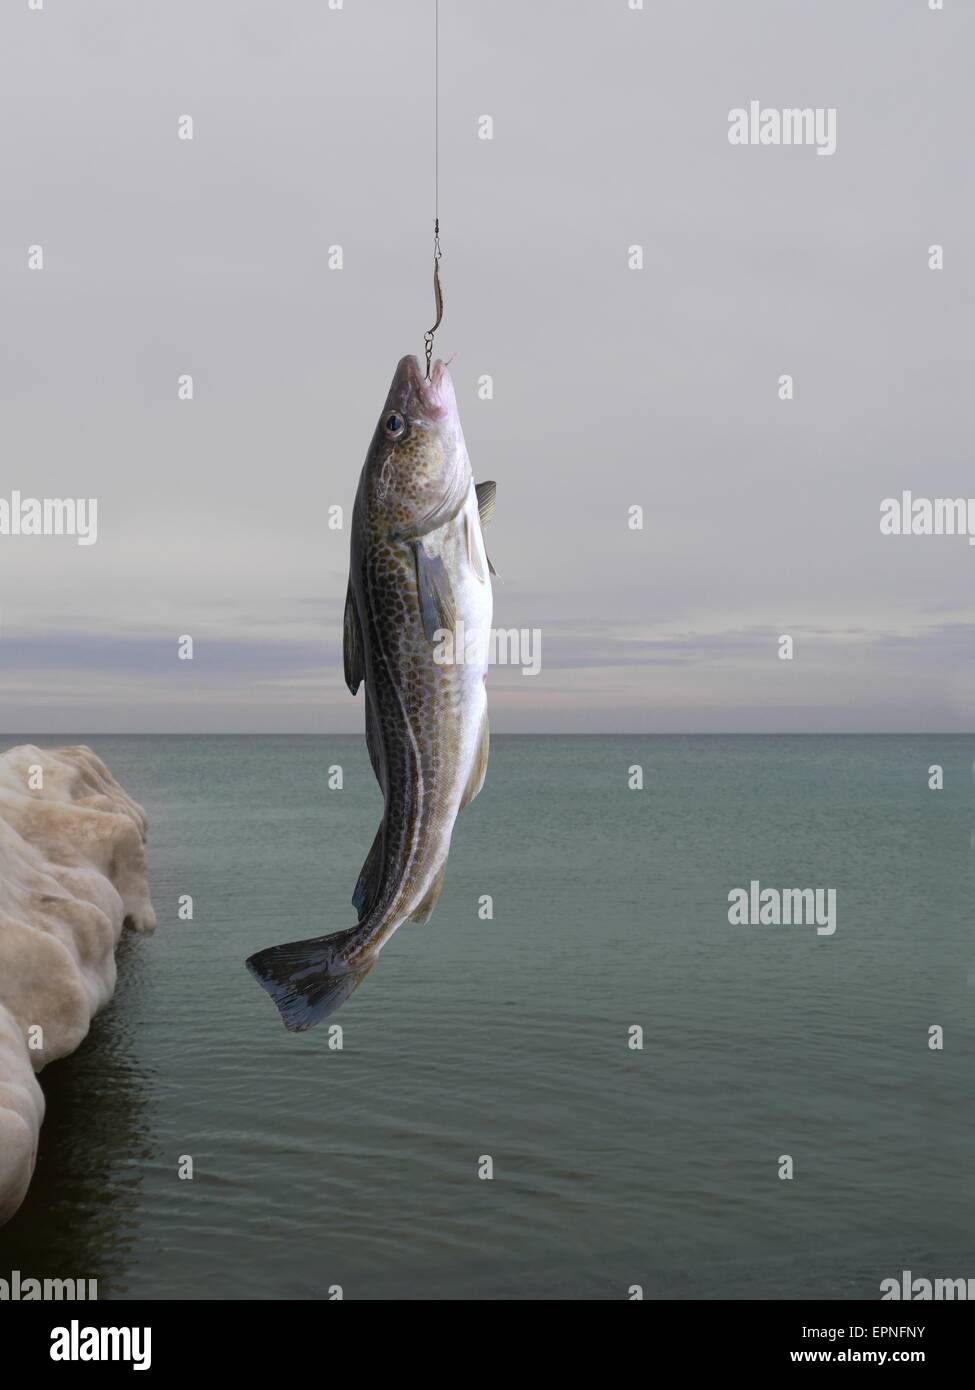 codfish on fishing-rod on background of sea Stock Photo - Alamy